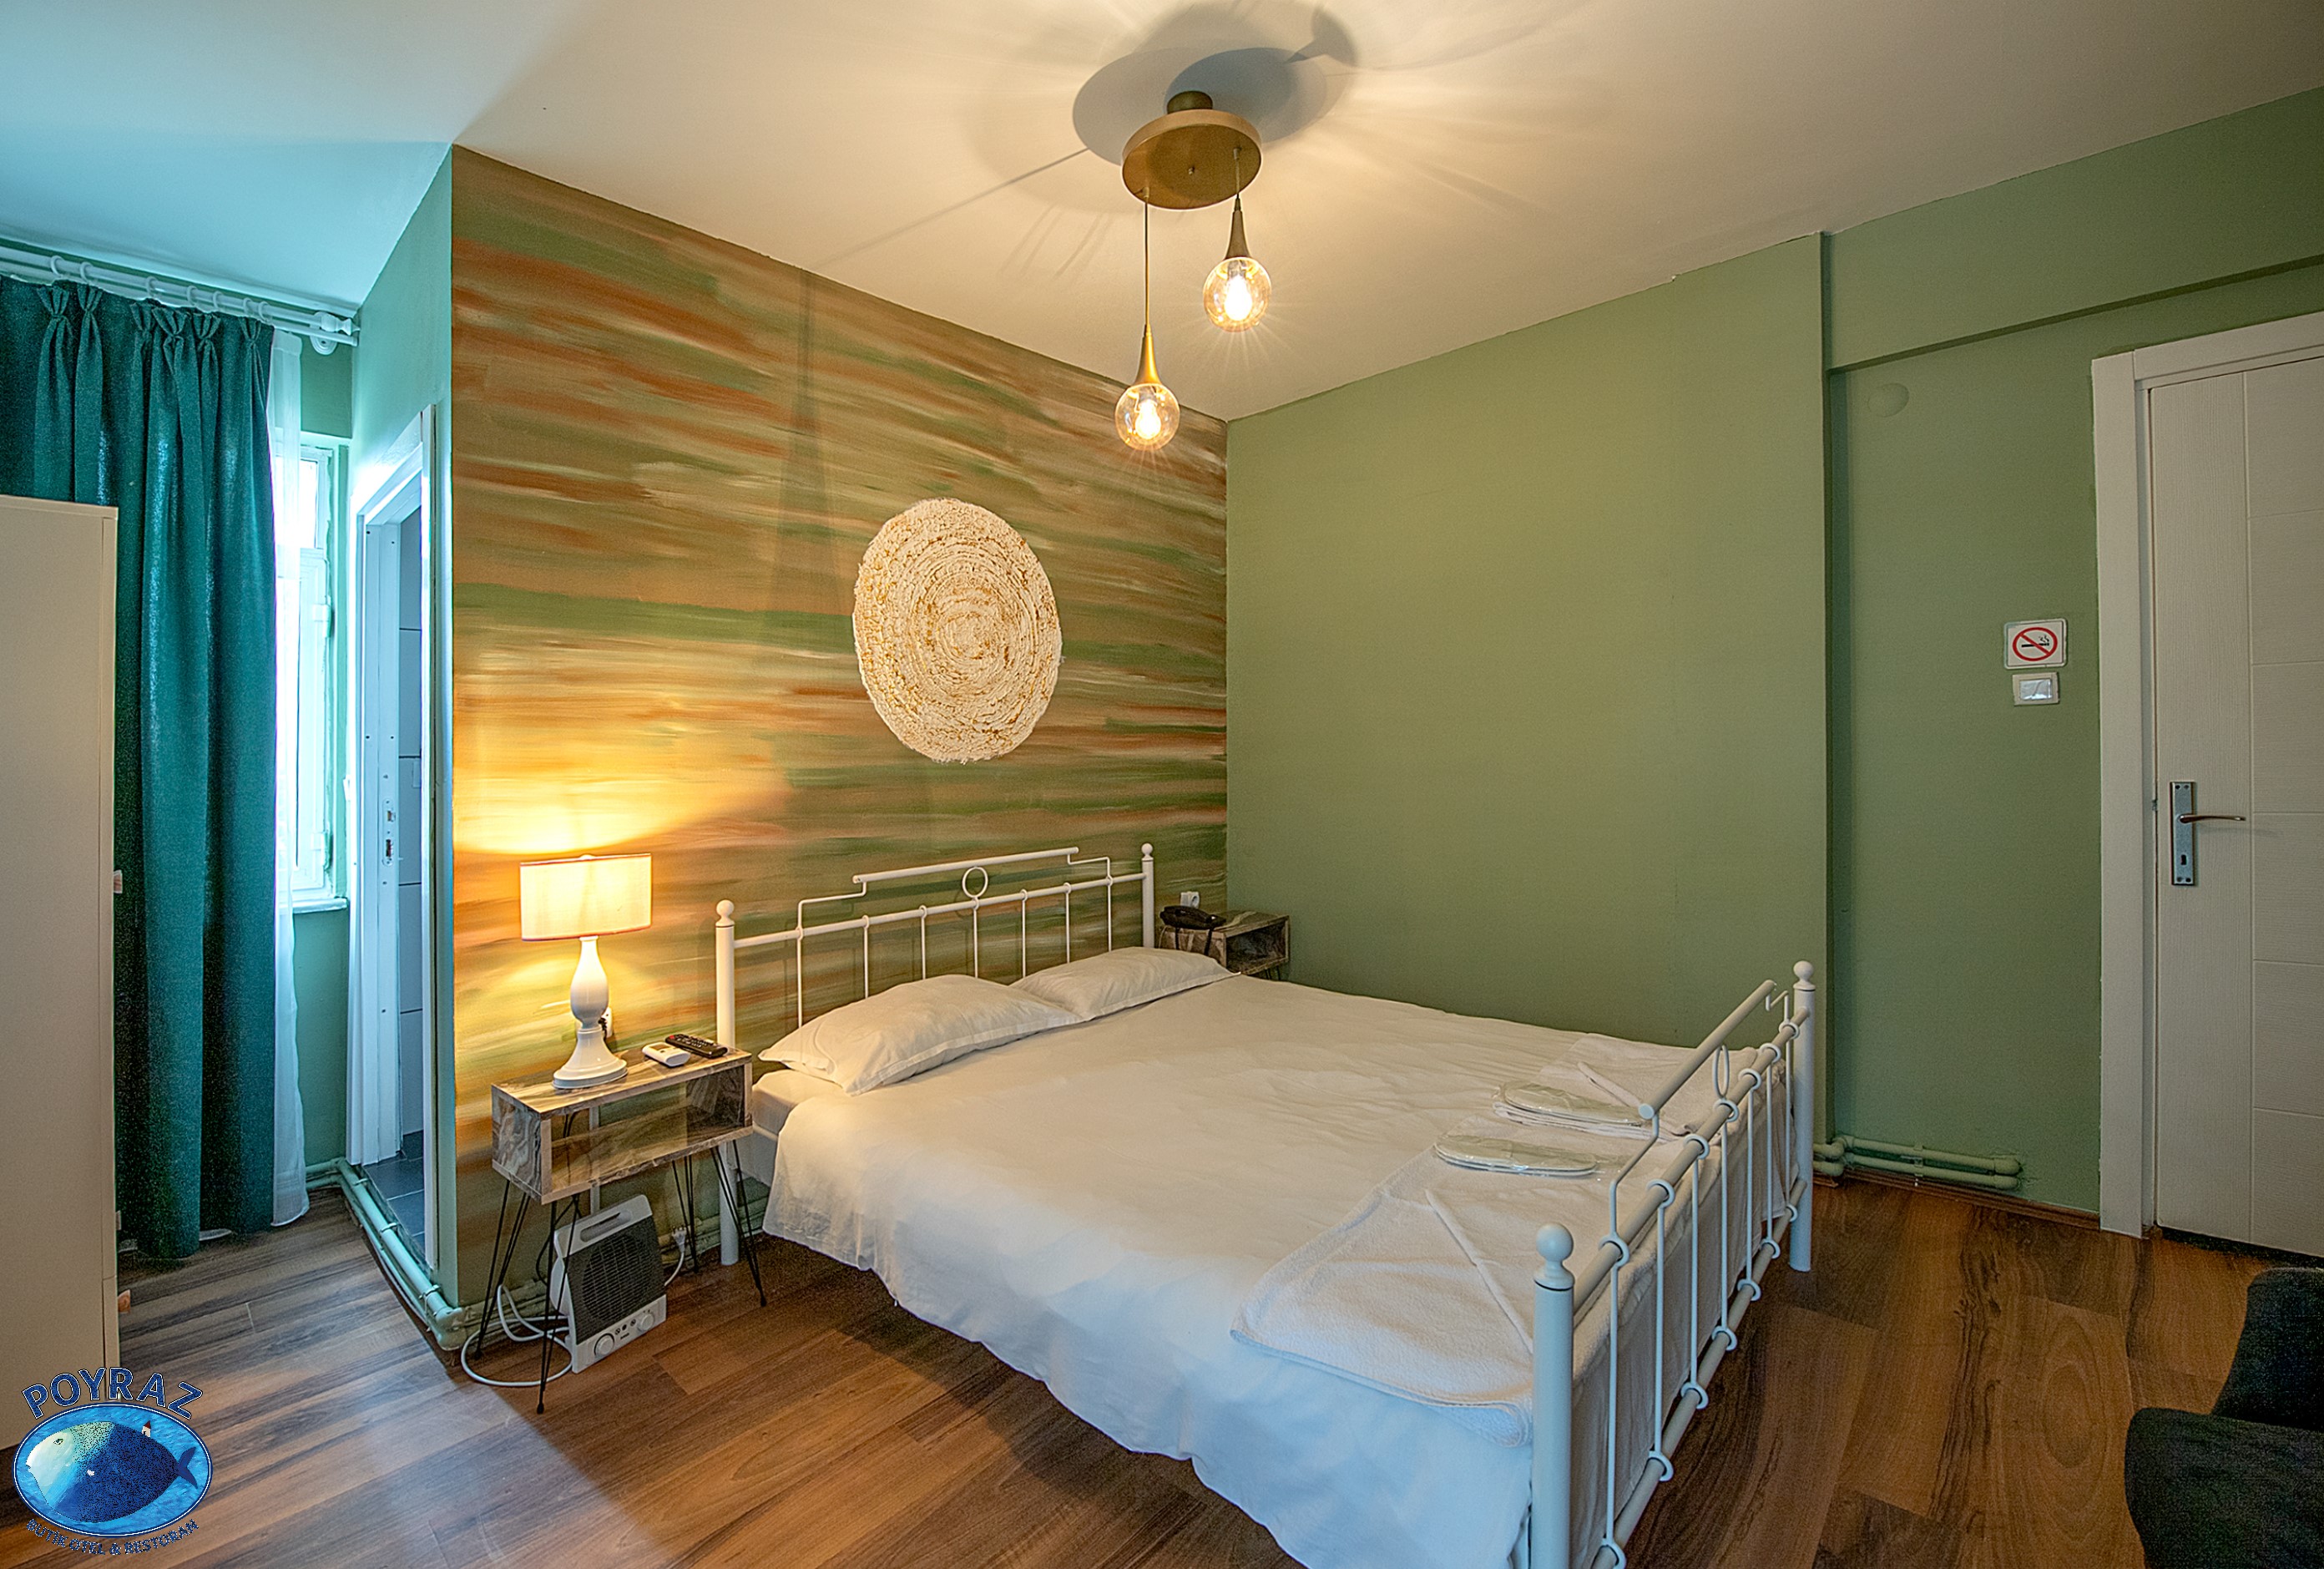 Poyraz Butik Hotel Standart 7 Numaralı Bahçe Manzaralı Oda